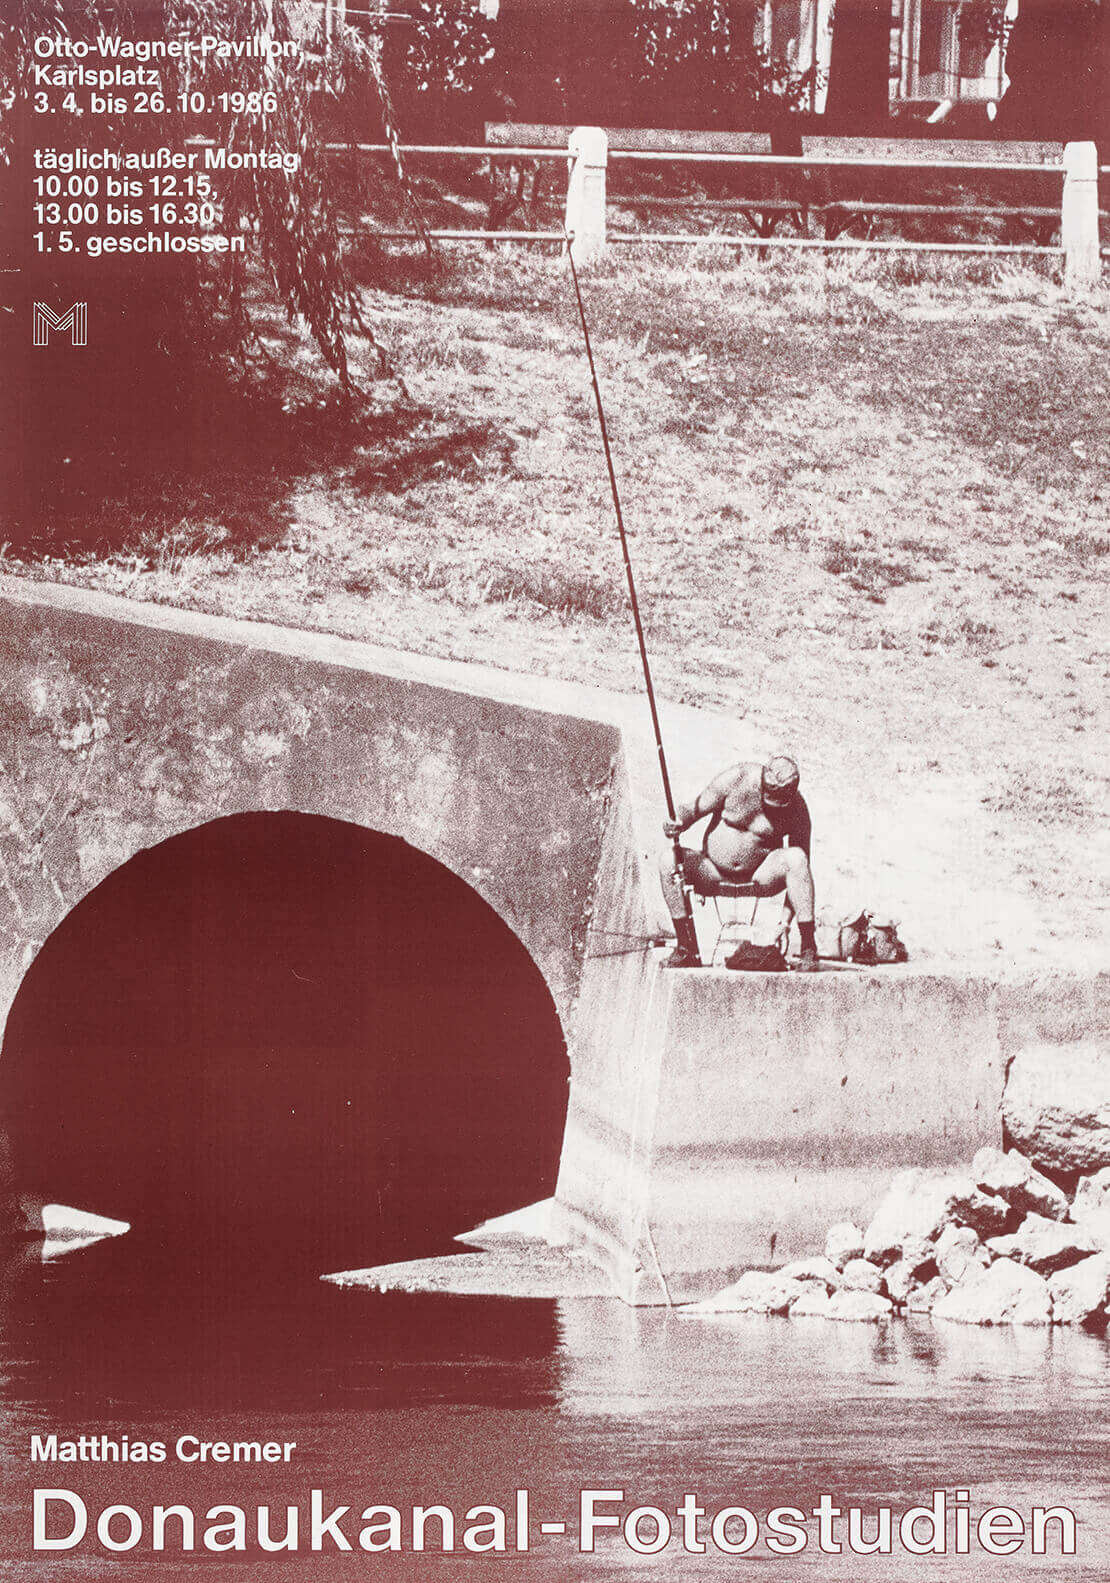 Plakat zur Ausstellung der Donaukanal-Fotos von Matthias Cremer, gezeigt vom Historischen Museum der Stadt Wien (heute: Wien Museum) im Otto Wagner Pavillon Karlsplatz, Grafik: Tino Erben, 1986 